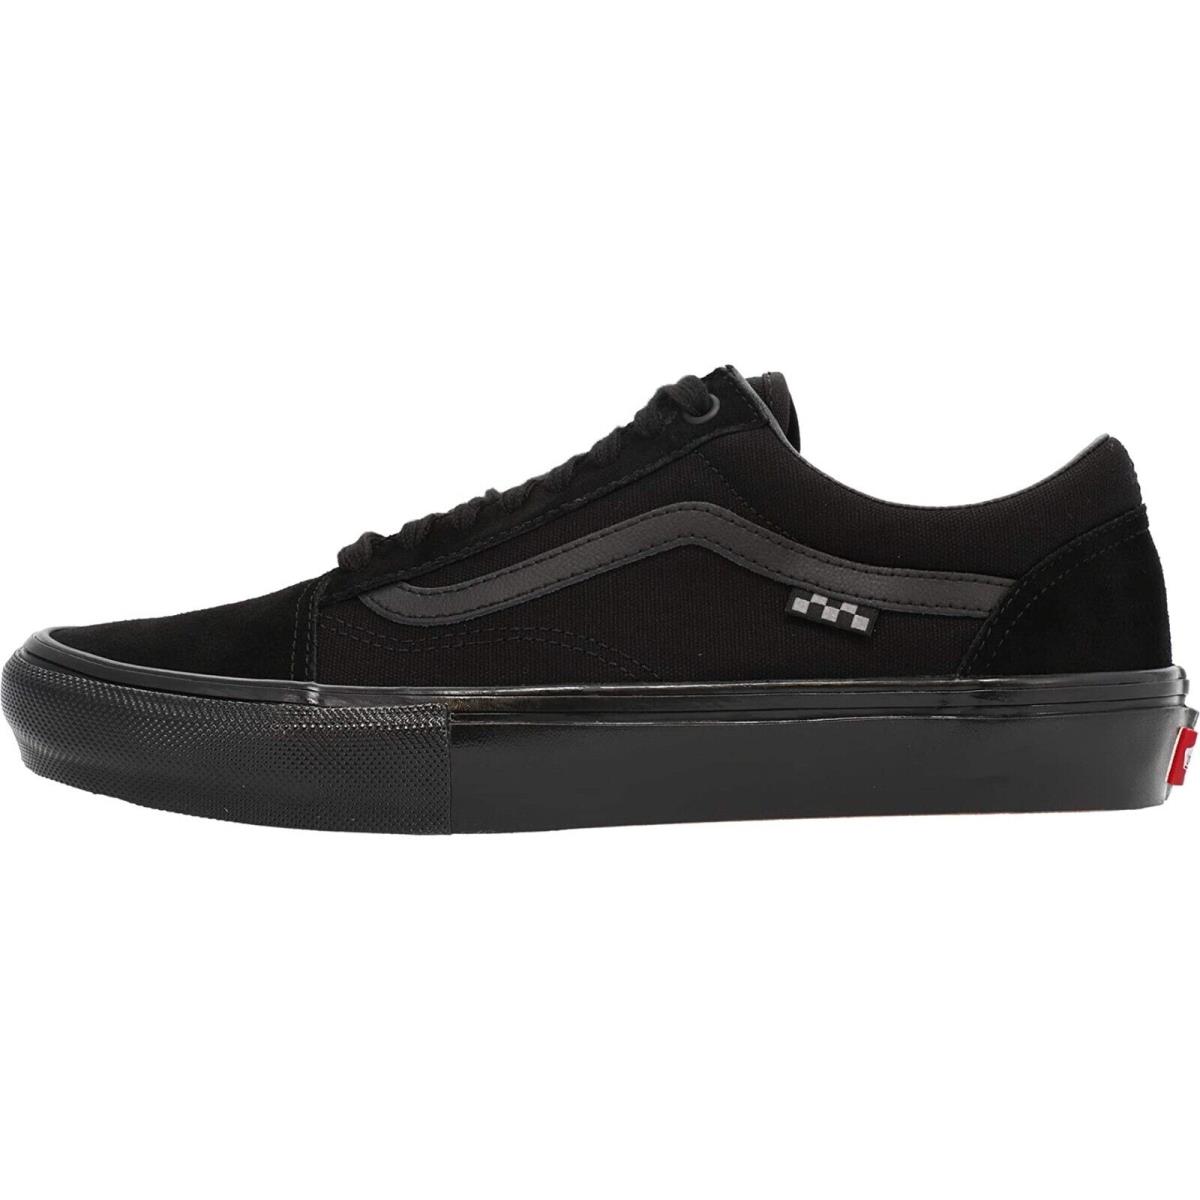 Vans Old Skool Unisex Suede Sneakers Mens Womens Skateboard Canvas Shoes (Skate) Black/Black